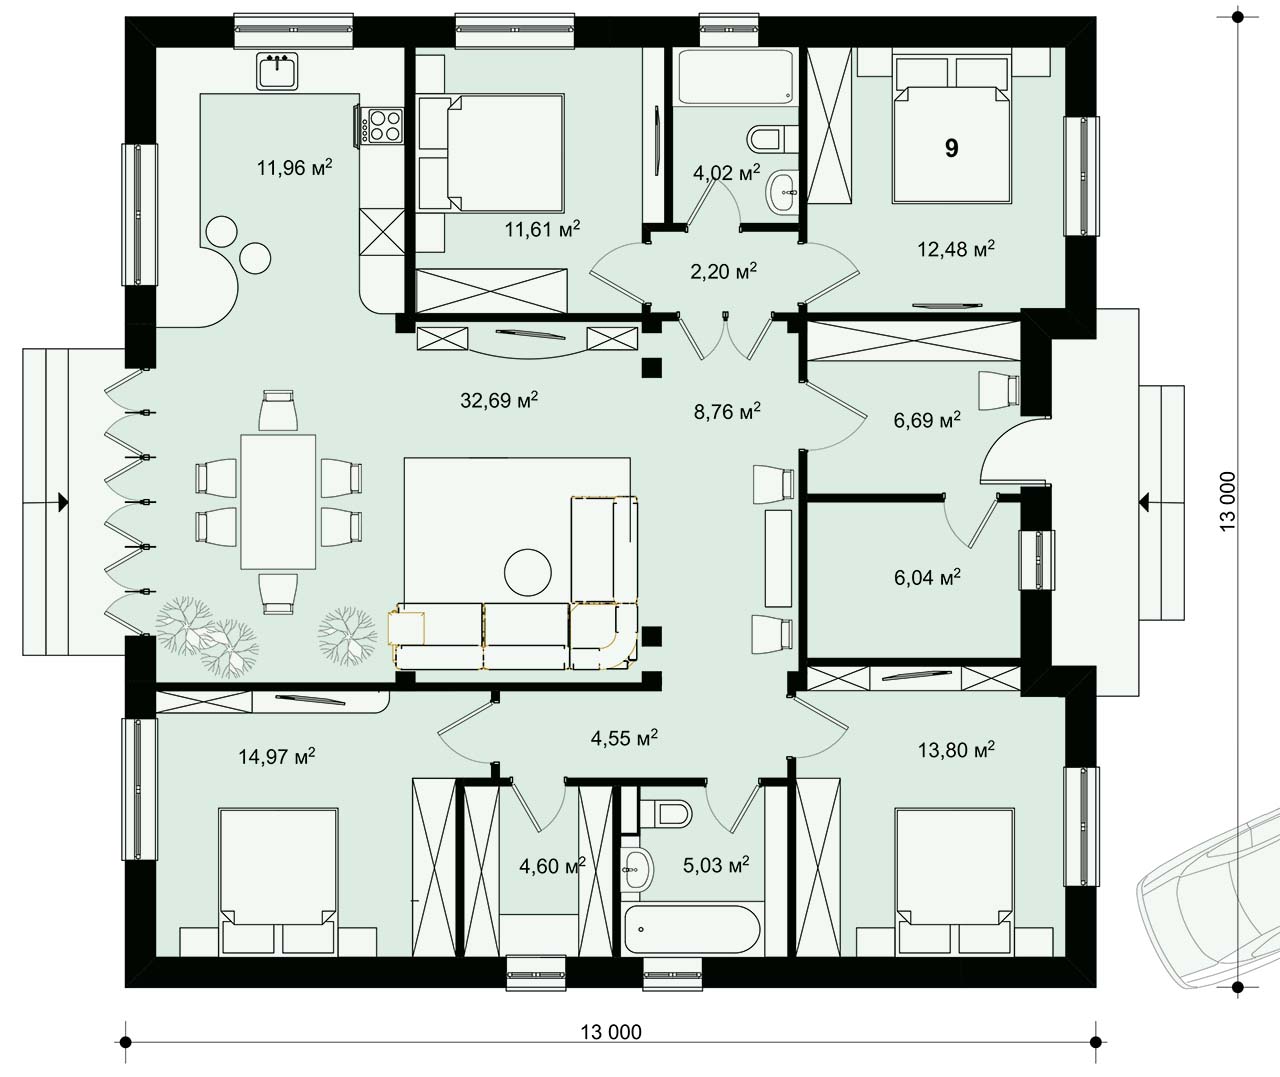 Планировка в проекте одноэтажного квадратного дома 13 на 13